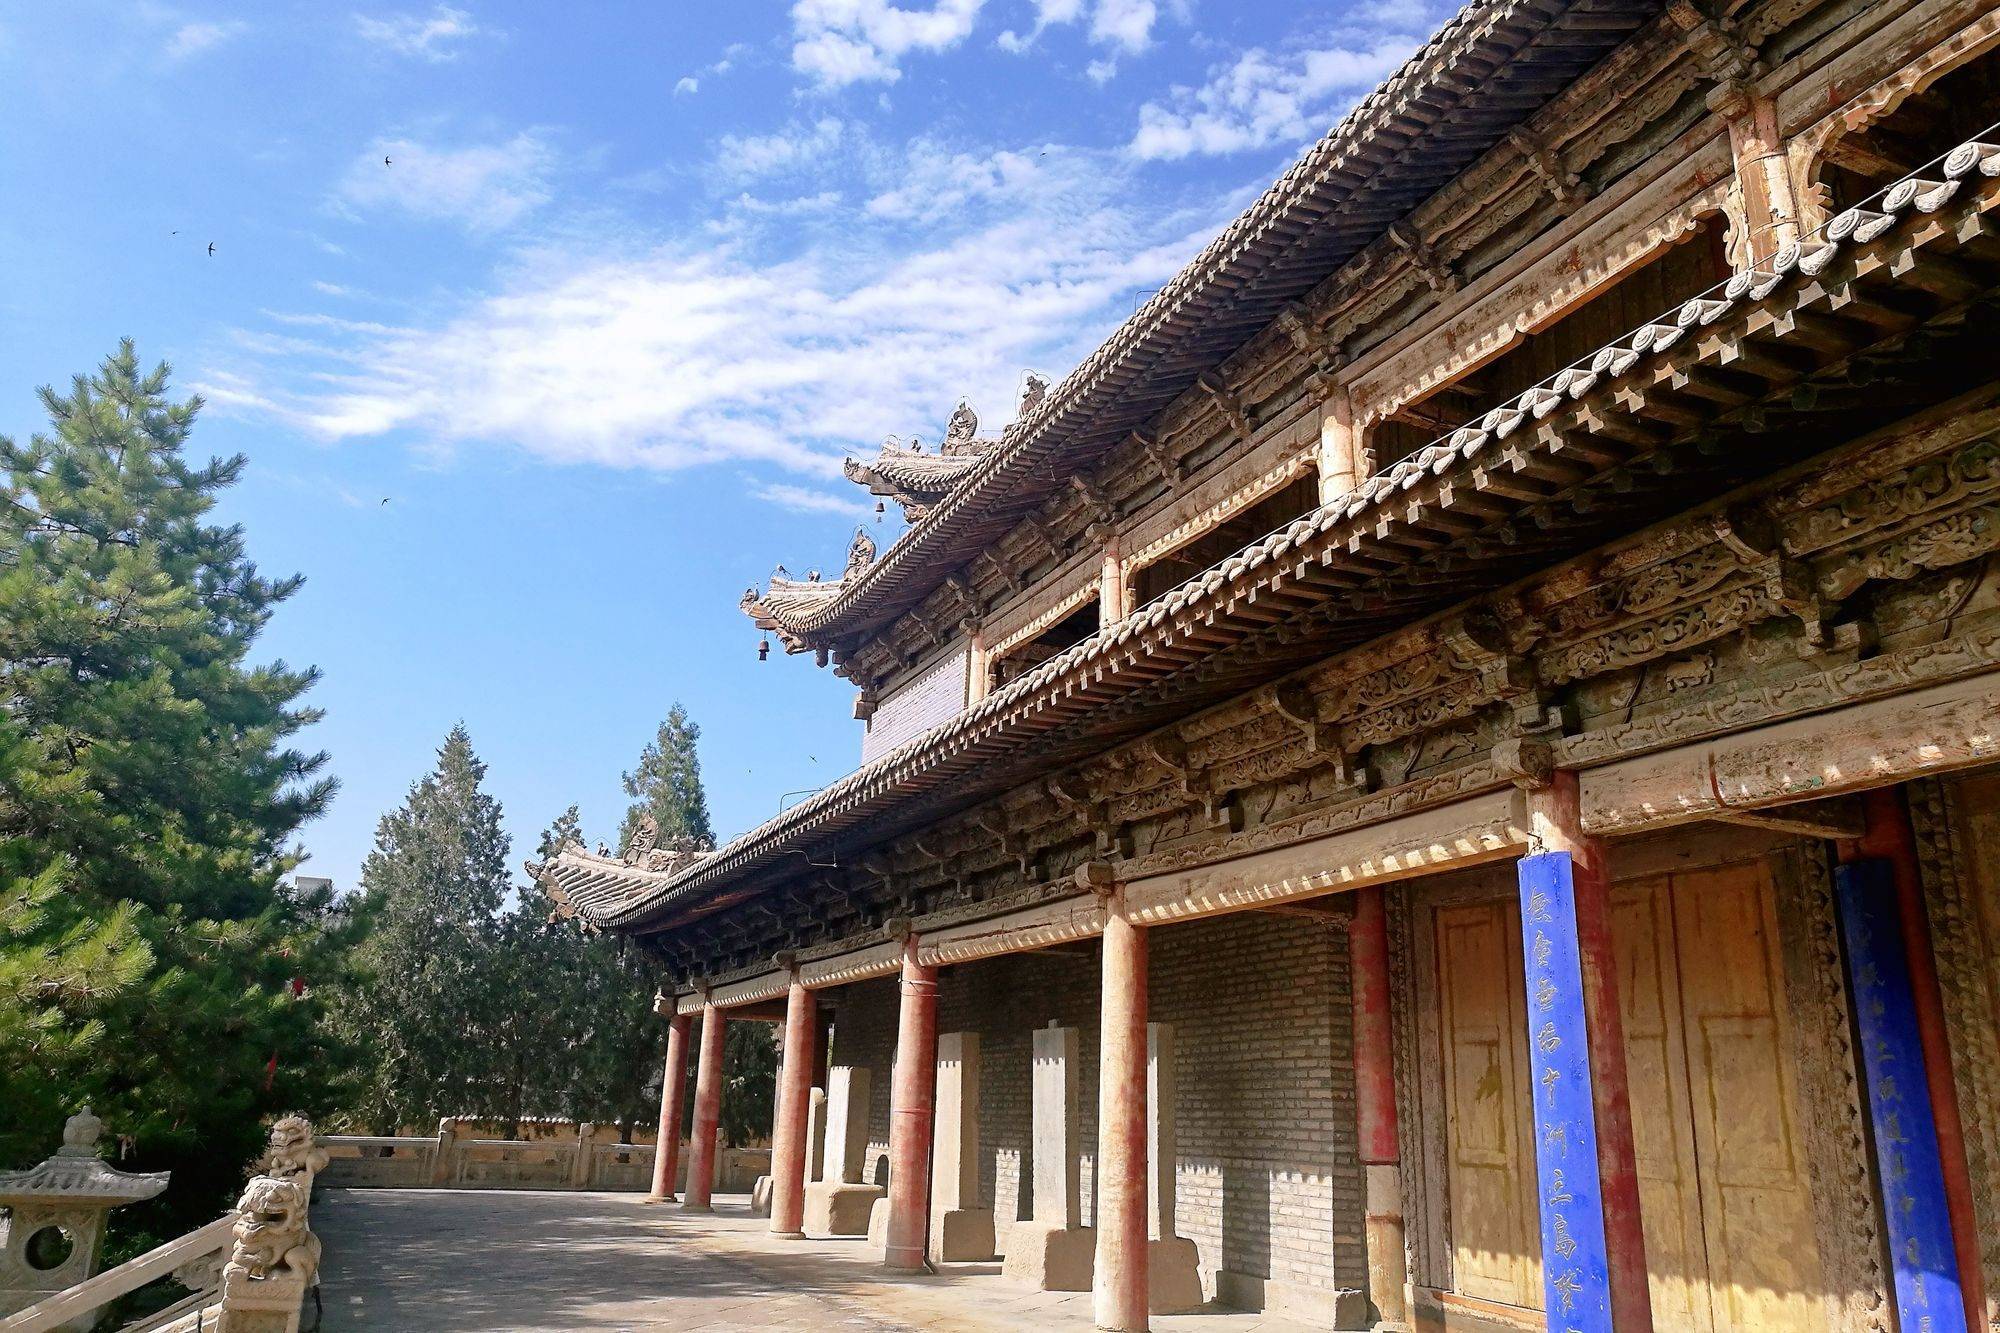 甘肃张掖有一座大佛寺，历史悠久，环境清幽，寺中造像精美绝伦